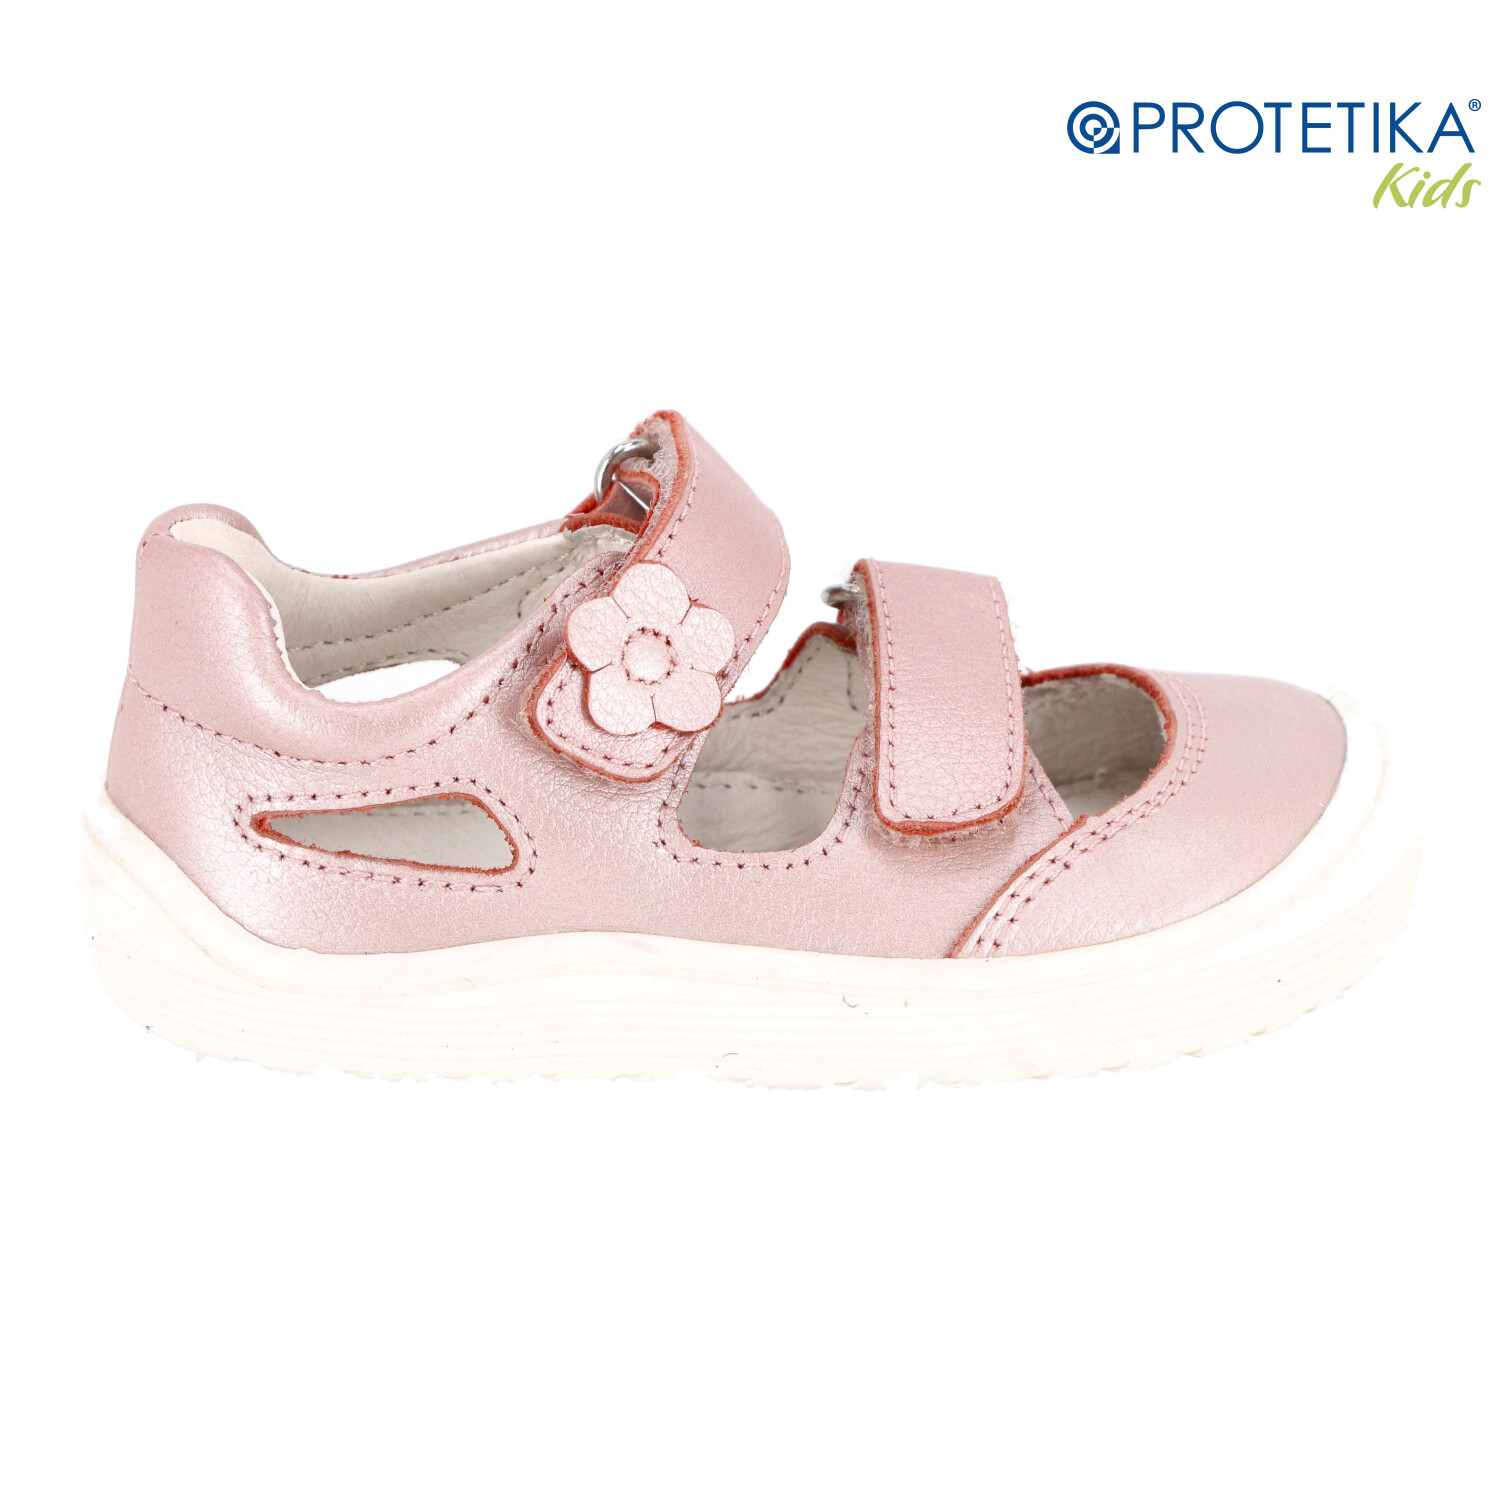 Protetika - barefootové topánky PADY pink